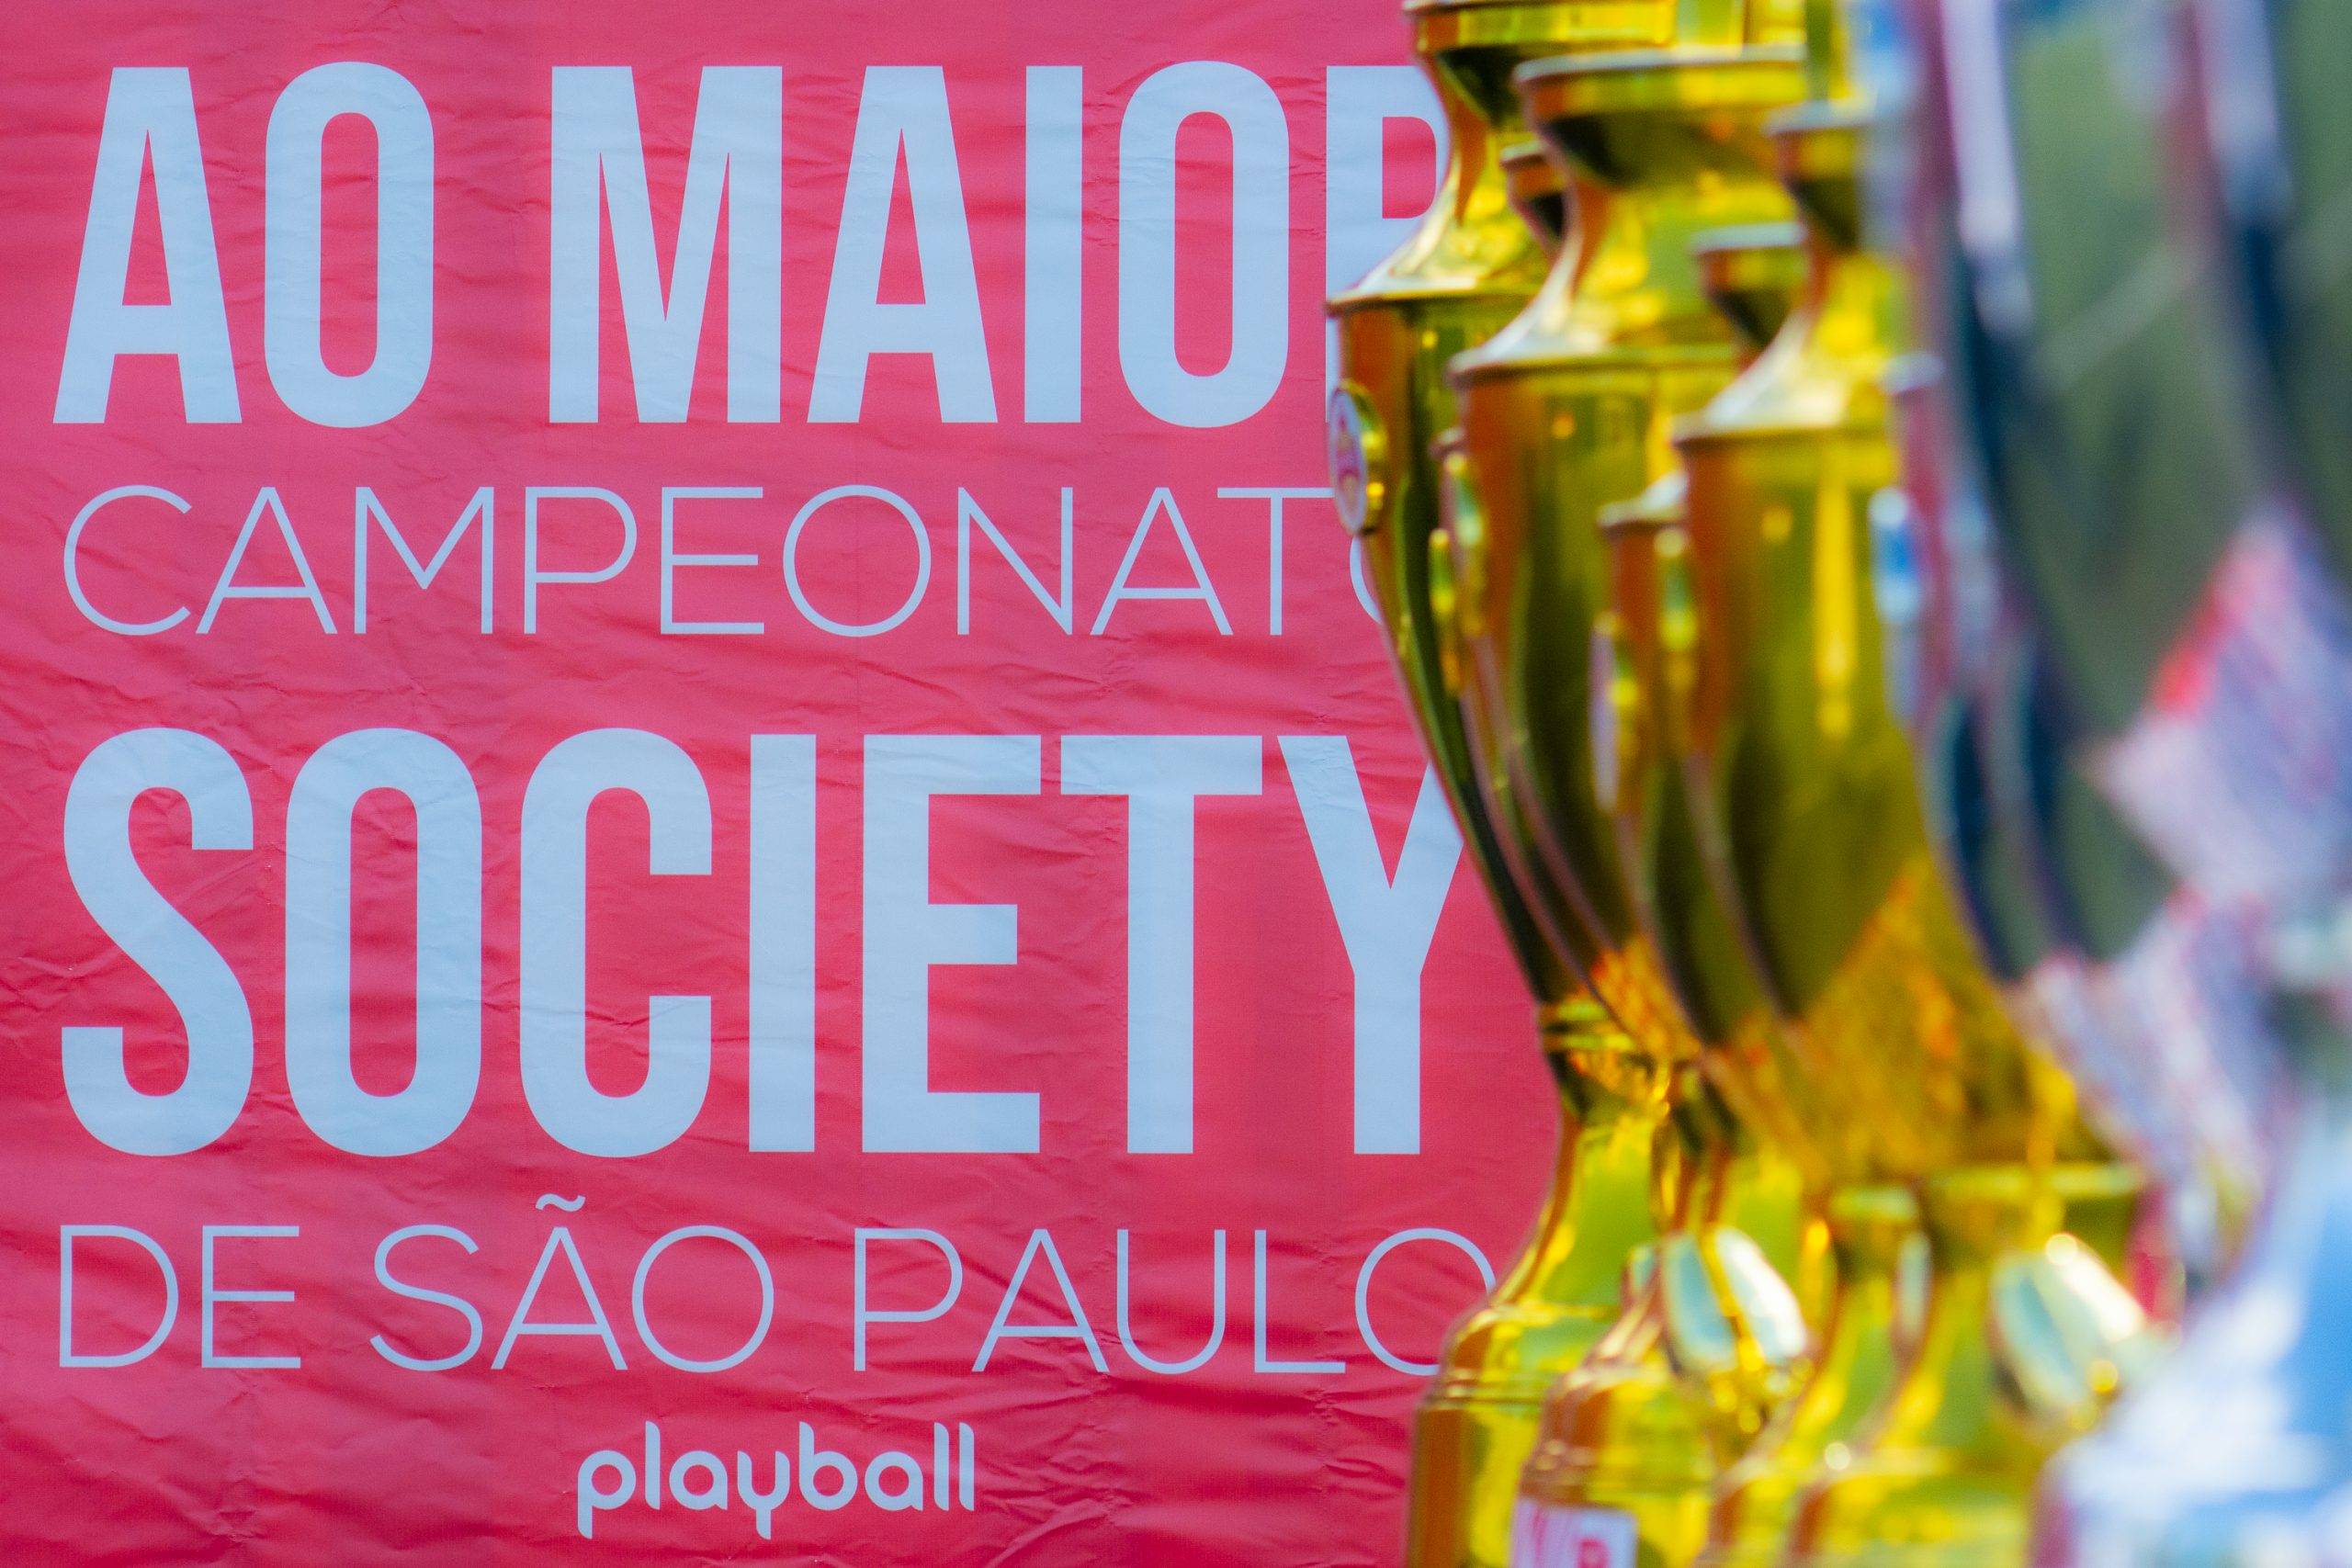 Campeonatos Amadores-O maior complexo de quadras society de São Paulo, oferece a melhor resenha e muito futebol, para completar seus dias com total diversão.